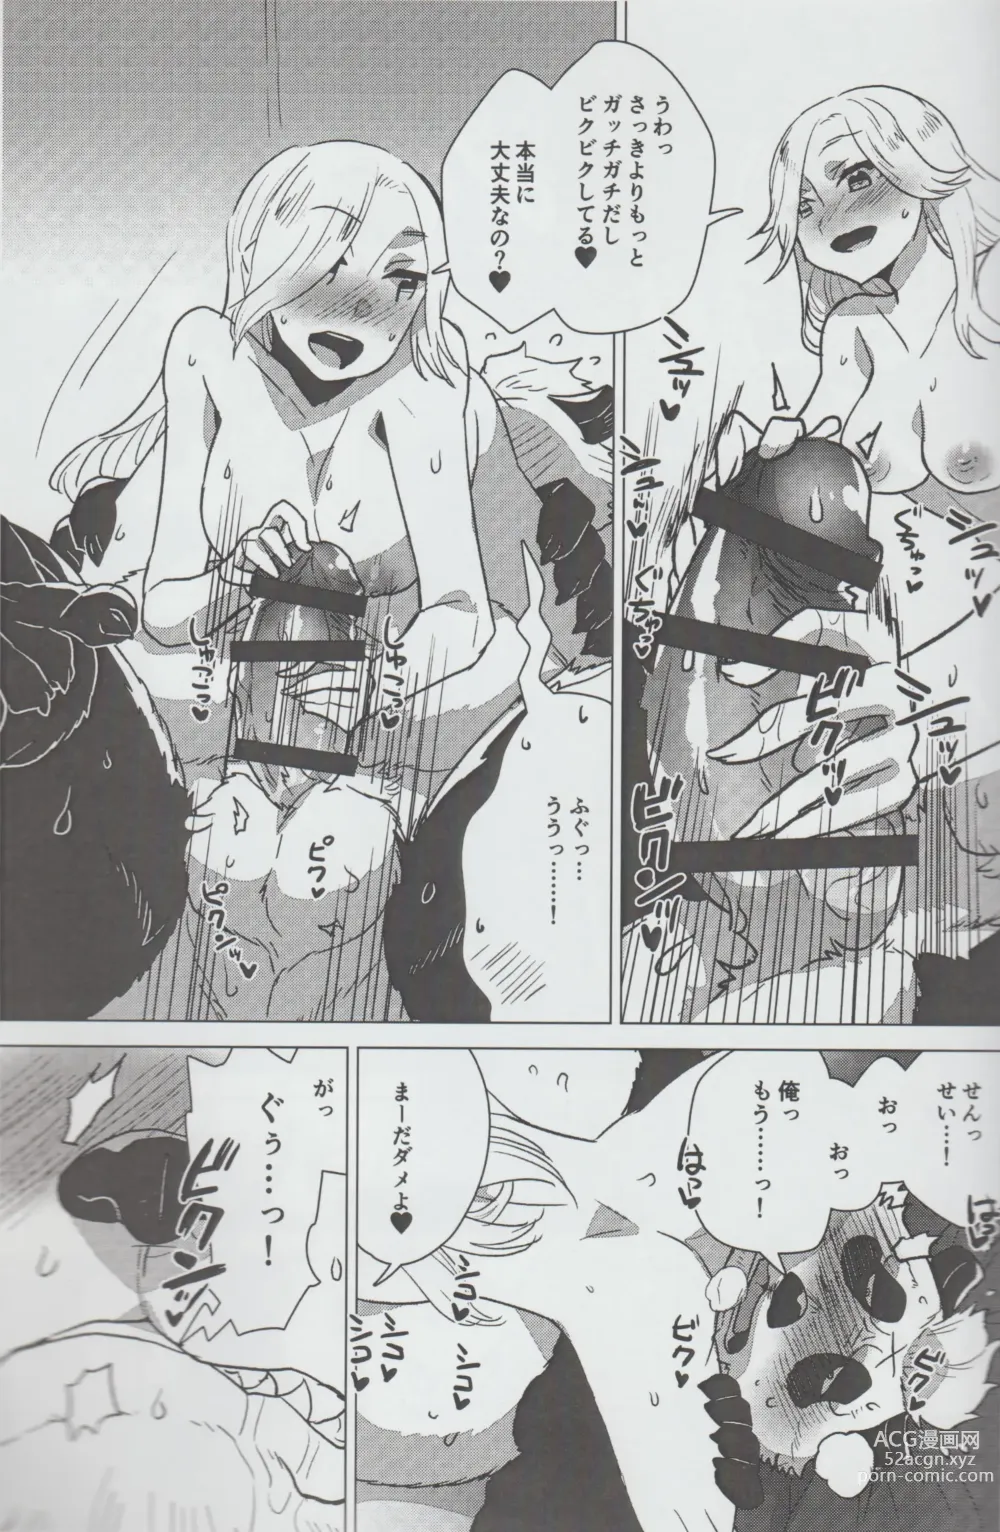 Page 14 of doujinshi Mihoshi Ginza Shopping Street Kaihoushi vol. 07